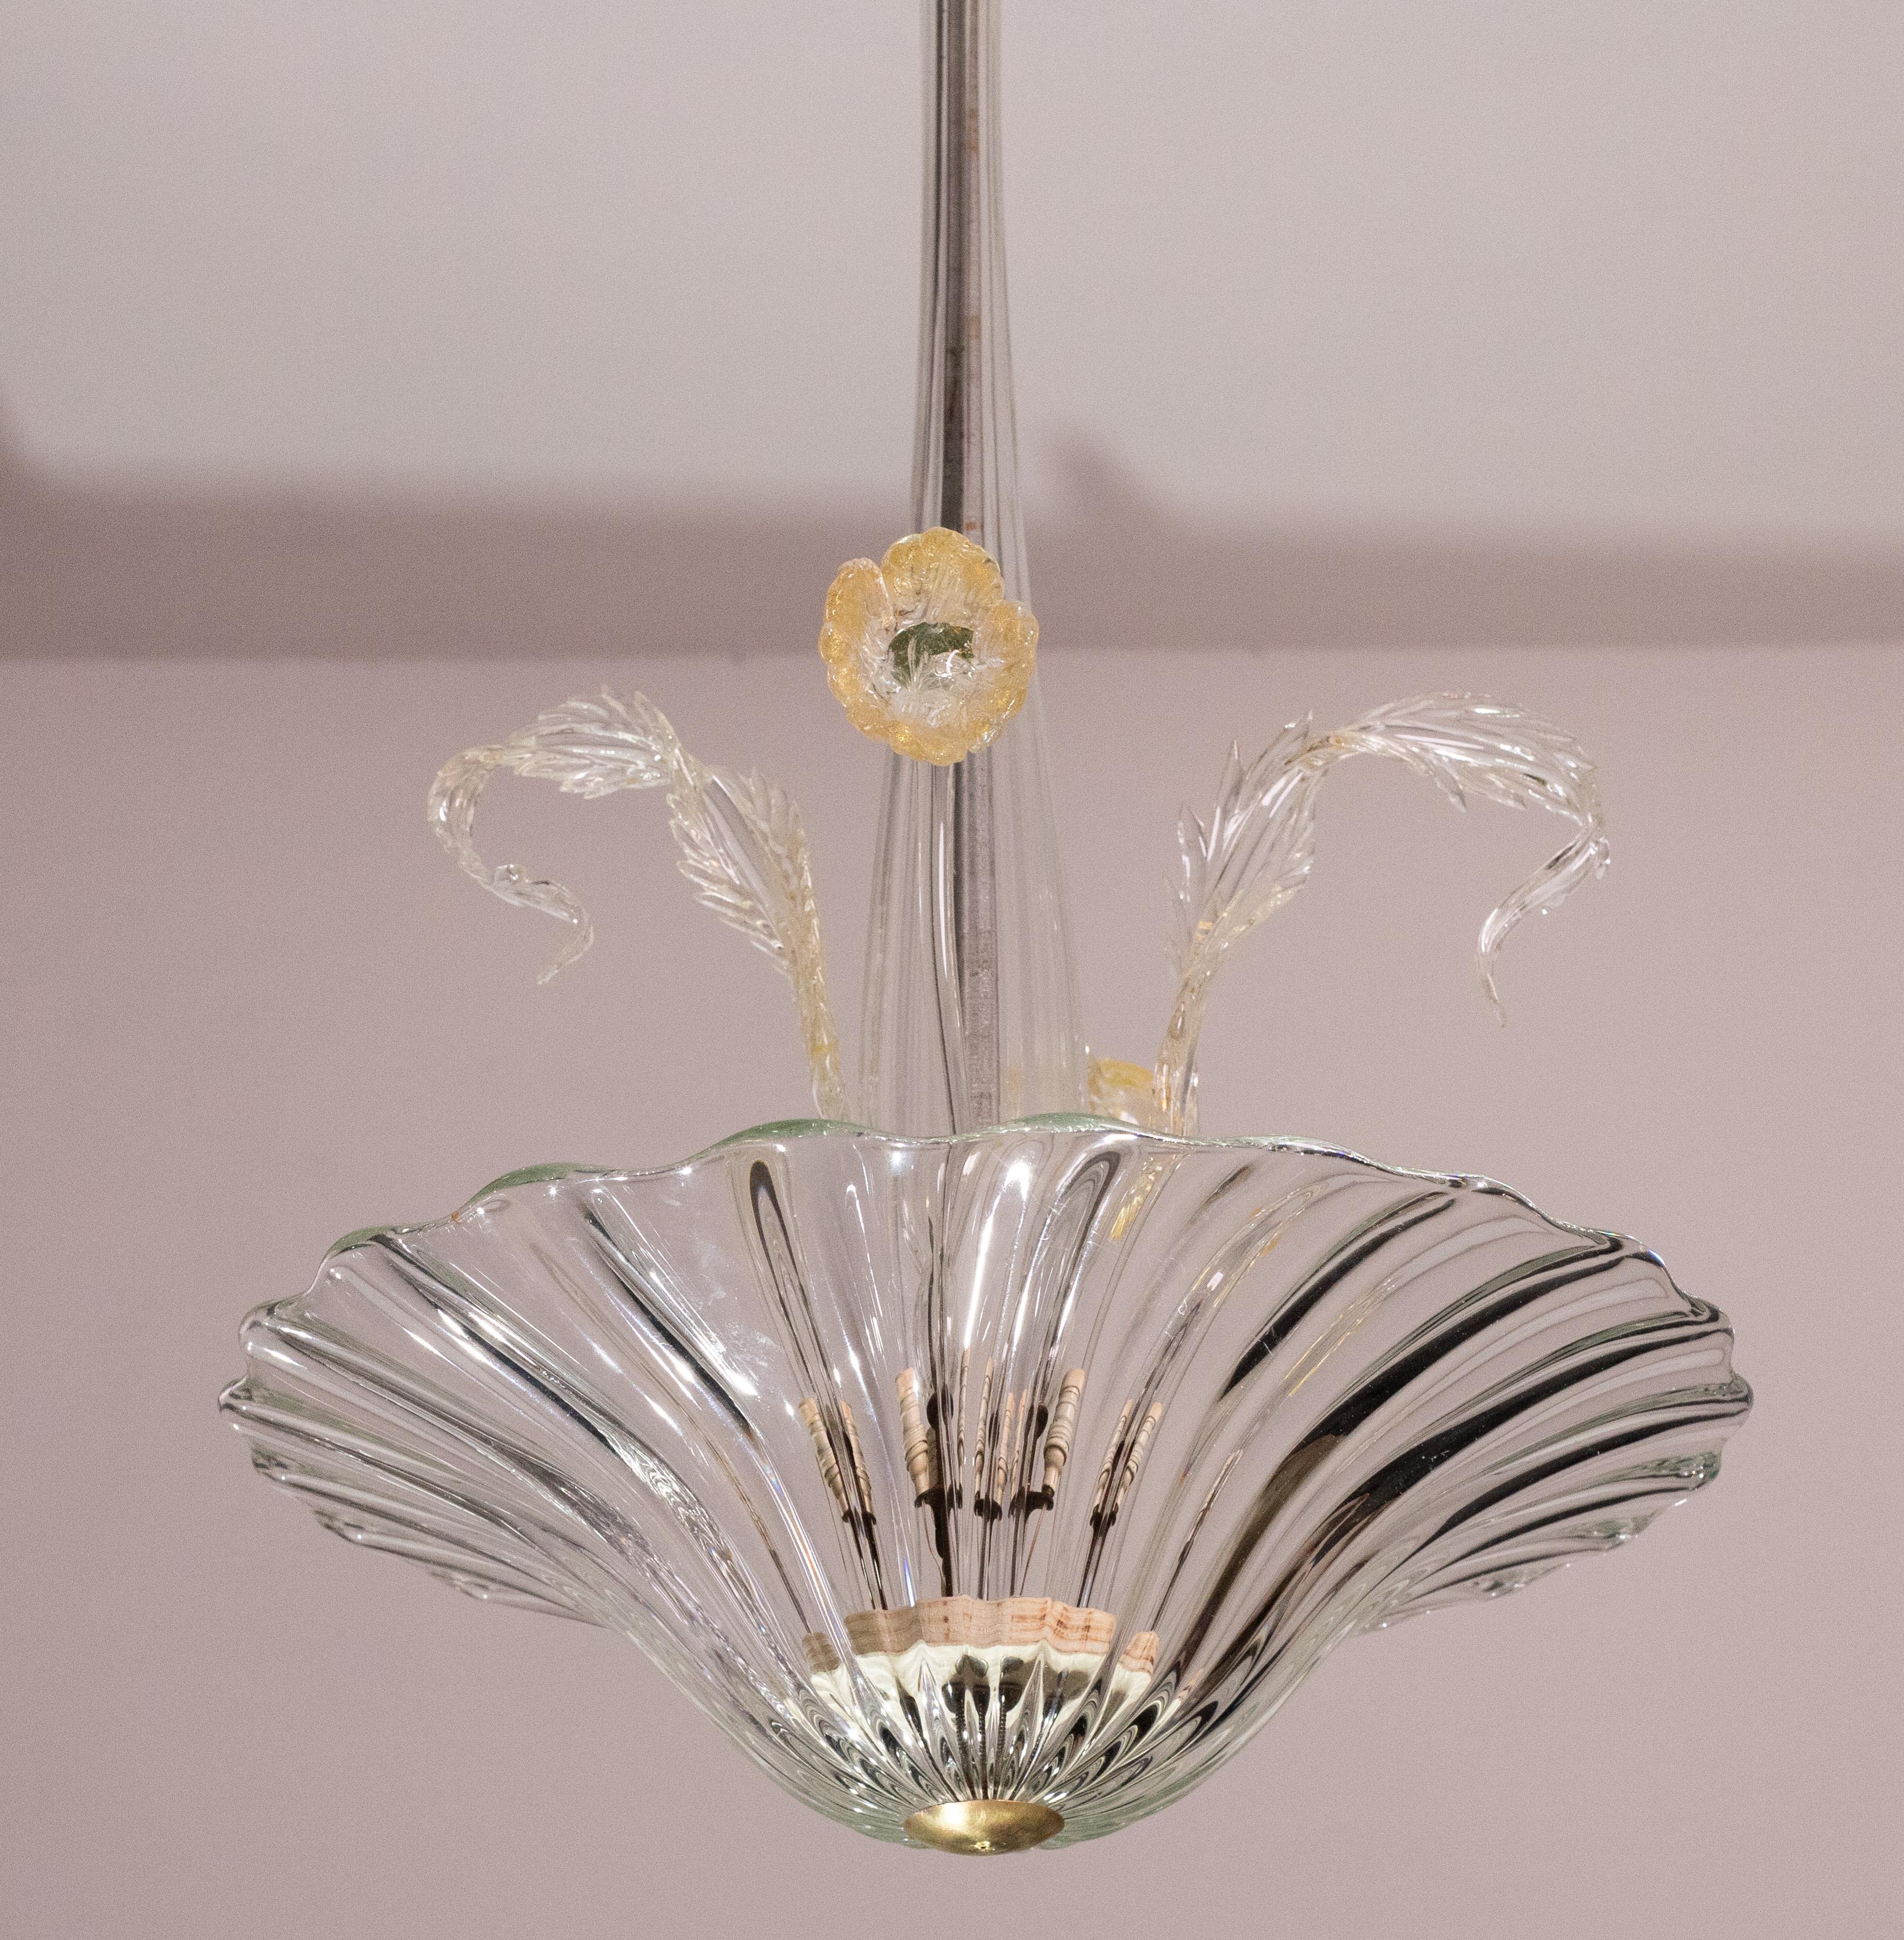 Magnifique lustre en verre de Murano datant des années 1950.

le lustre se compose d'un disque de verre d'où émergent 2 feuilles et 2 fleurs à l'intérieur.

L'une des deux feuilles présente un très petit éclat, absolument pas visible.

Il permet de